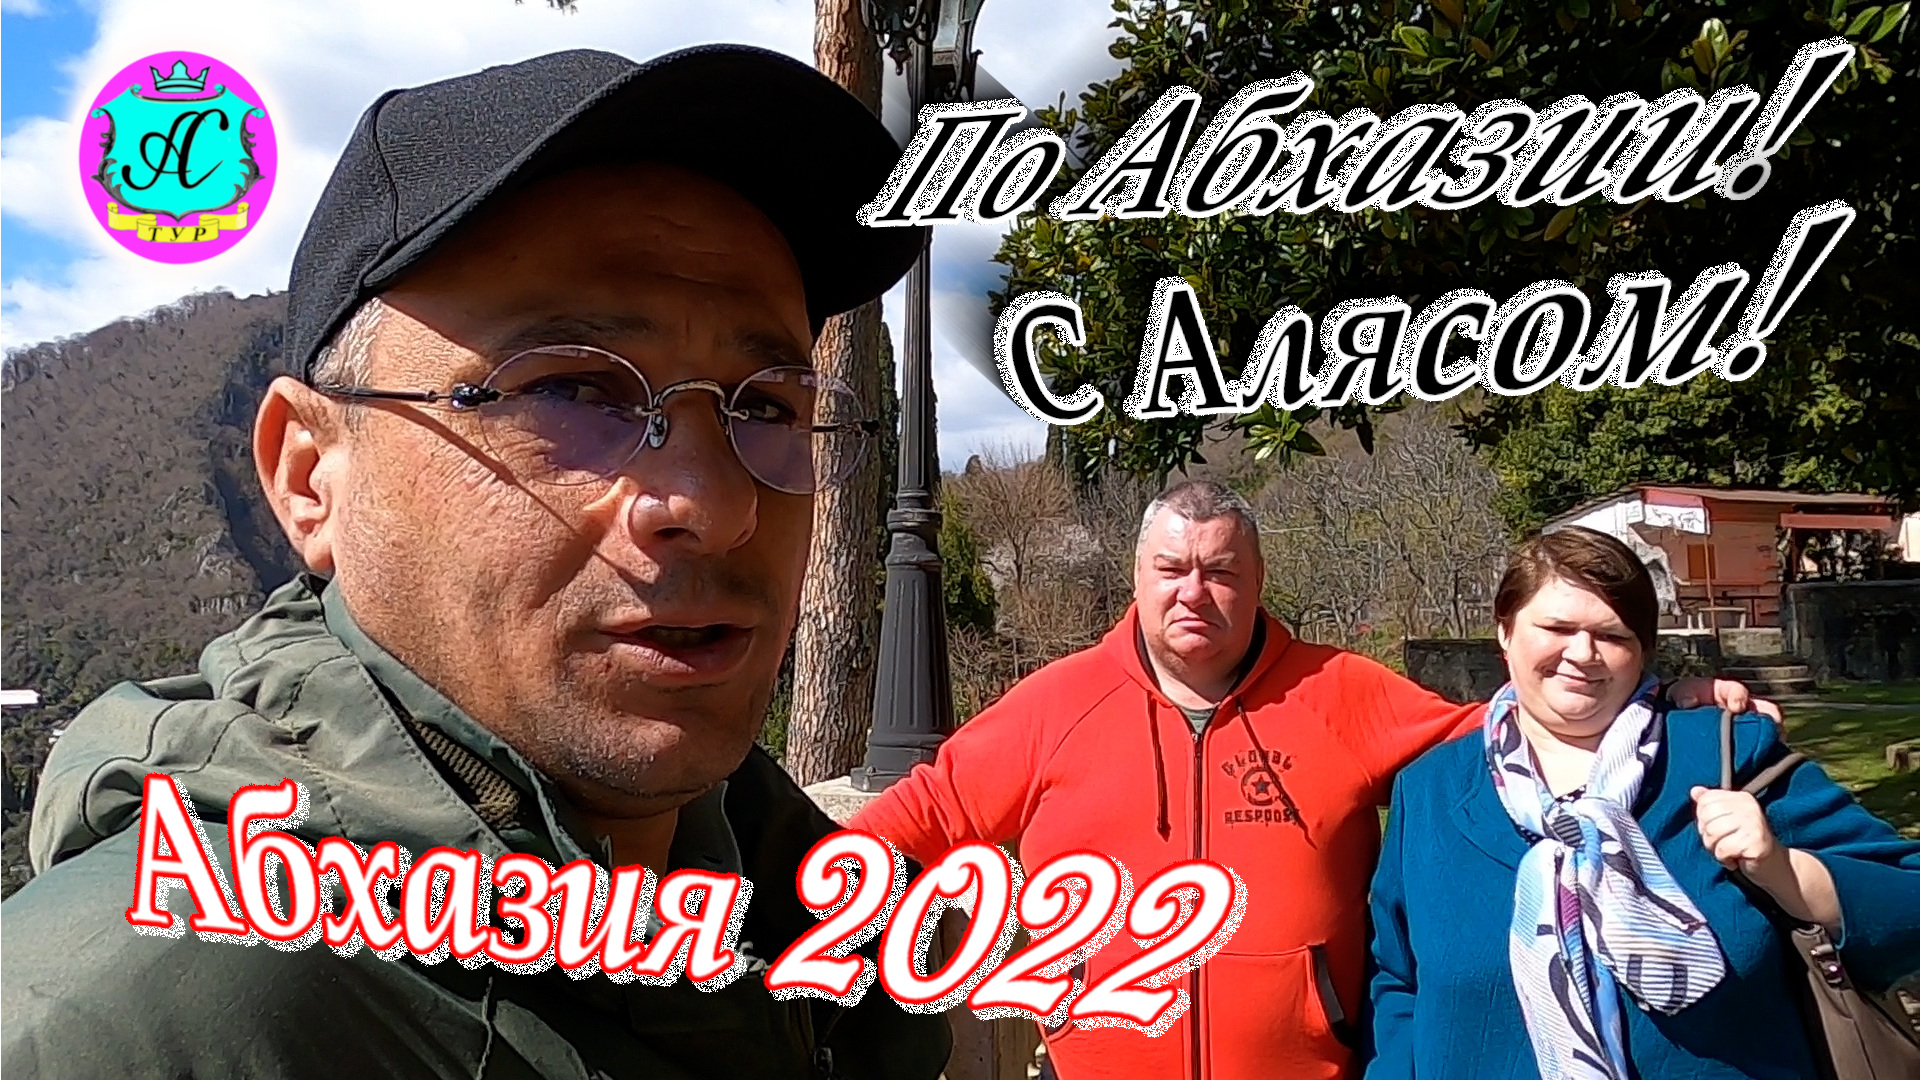 Экскурсии с Алясом "Бесподобным" по Абхазии - 2022?22 декабря?